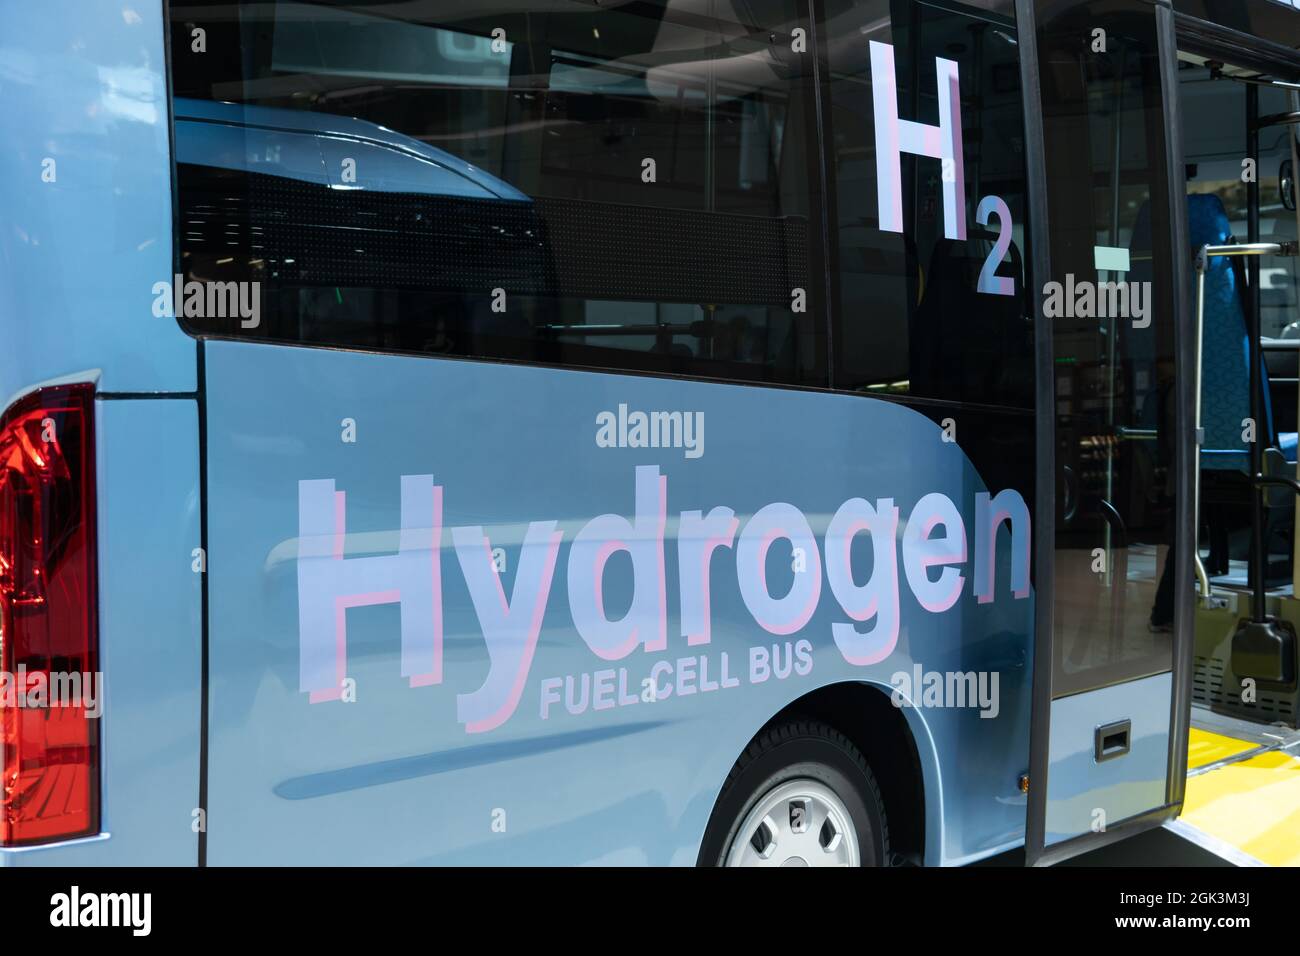 Bus blu con iscrizione BUS CELLA FUELL IDROGENO e simbolo H2 su una scheda. Veicolo ecologico Foto Stock